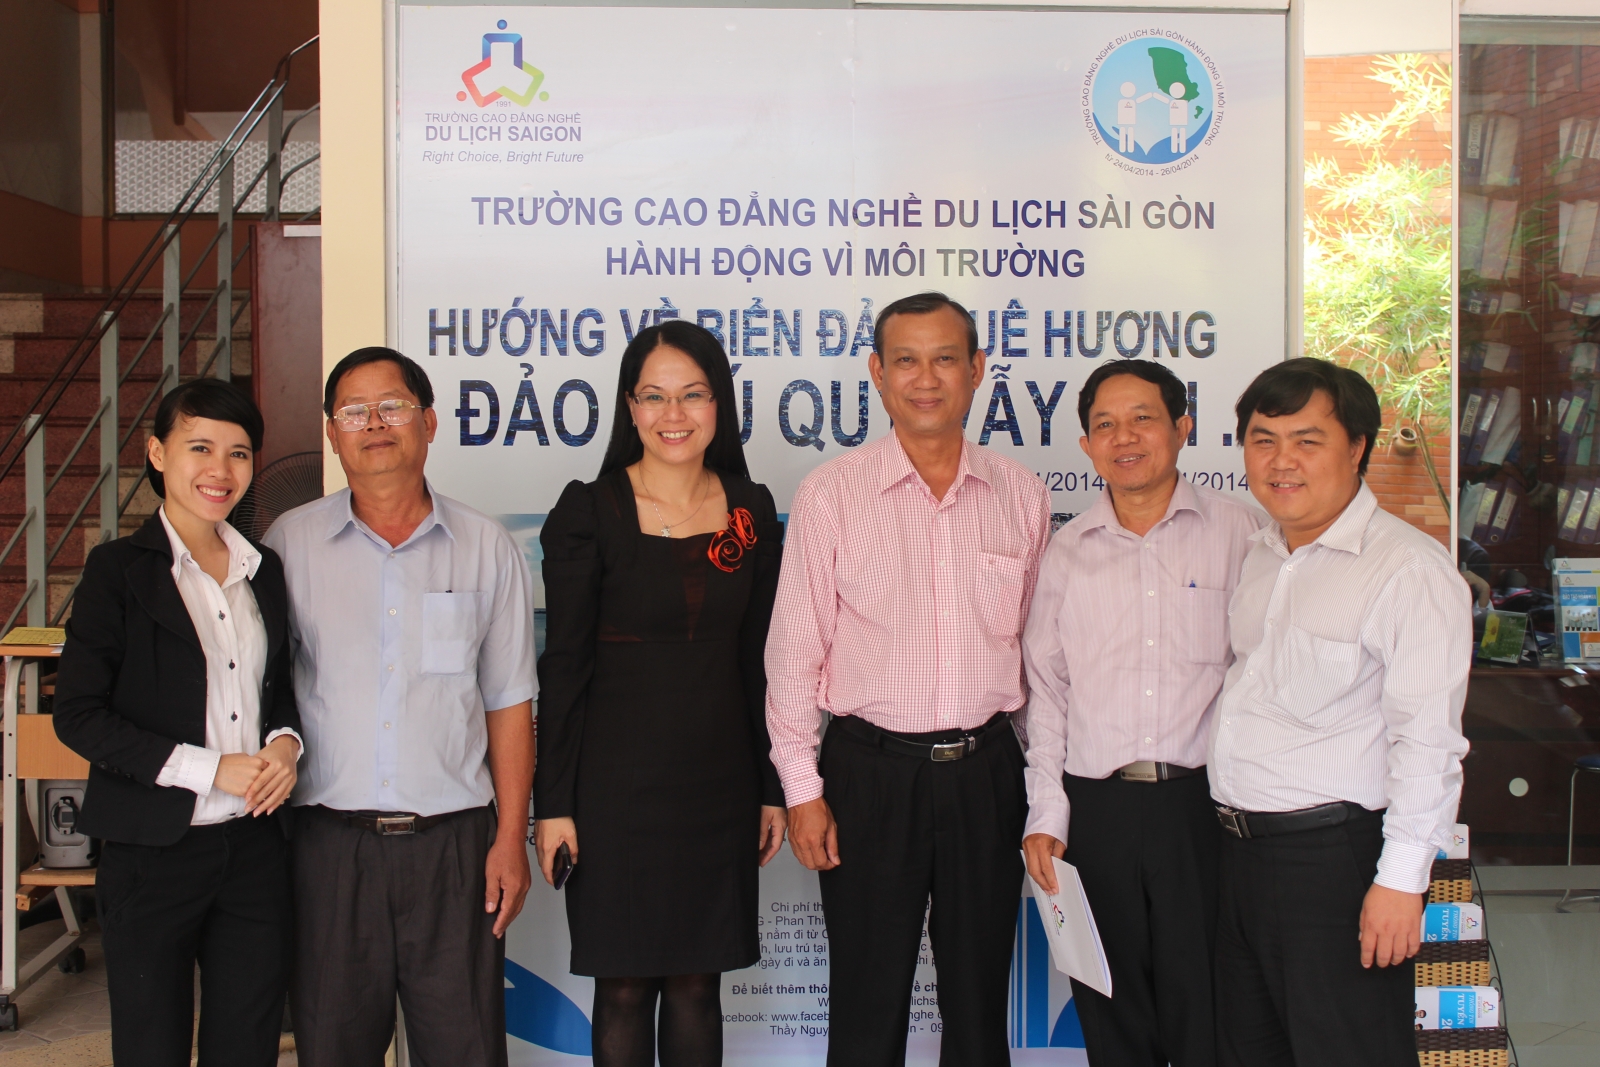 Sở Văn hóa – Thể thao – Du lịch Bình Thuận đến thăm và làm việc tại trường Cao đẳng nghề du lịch Sài Gòn - Trường Cao đẳng Du lịch Sài Gòn